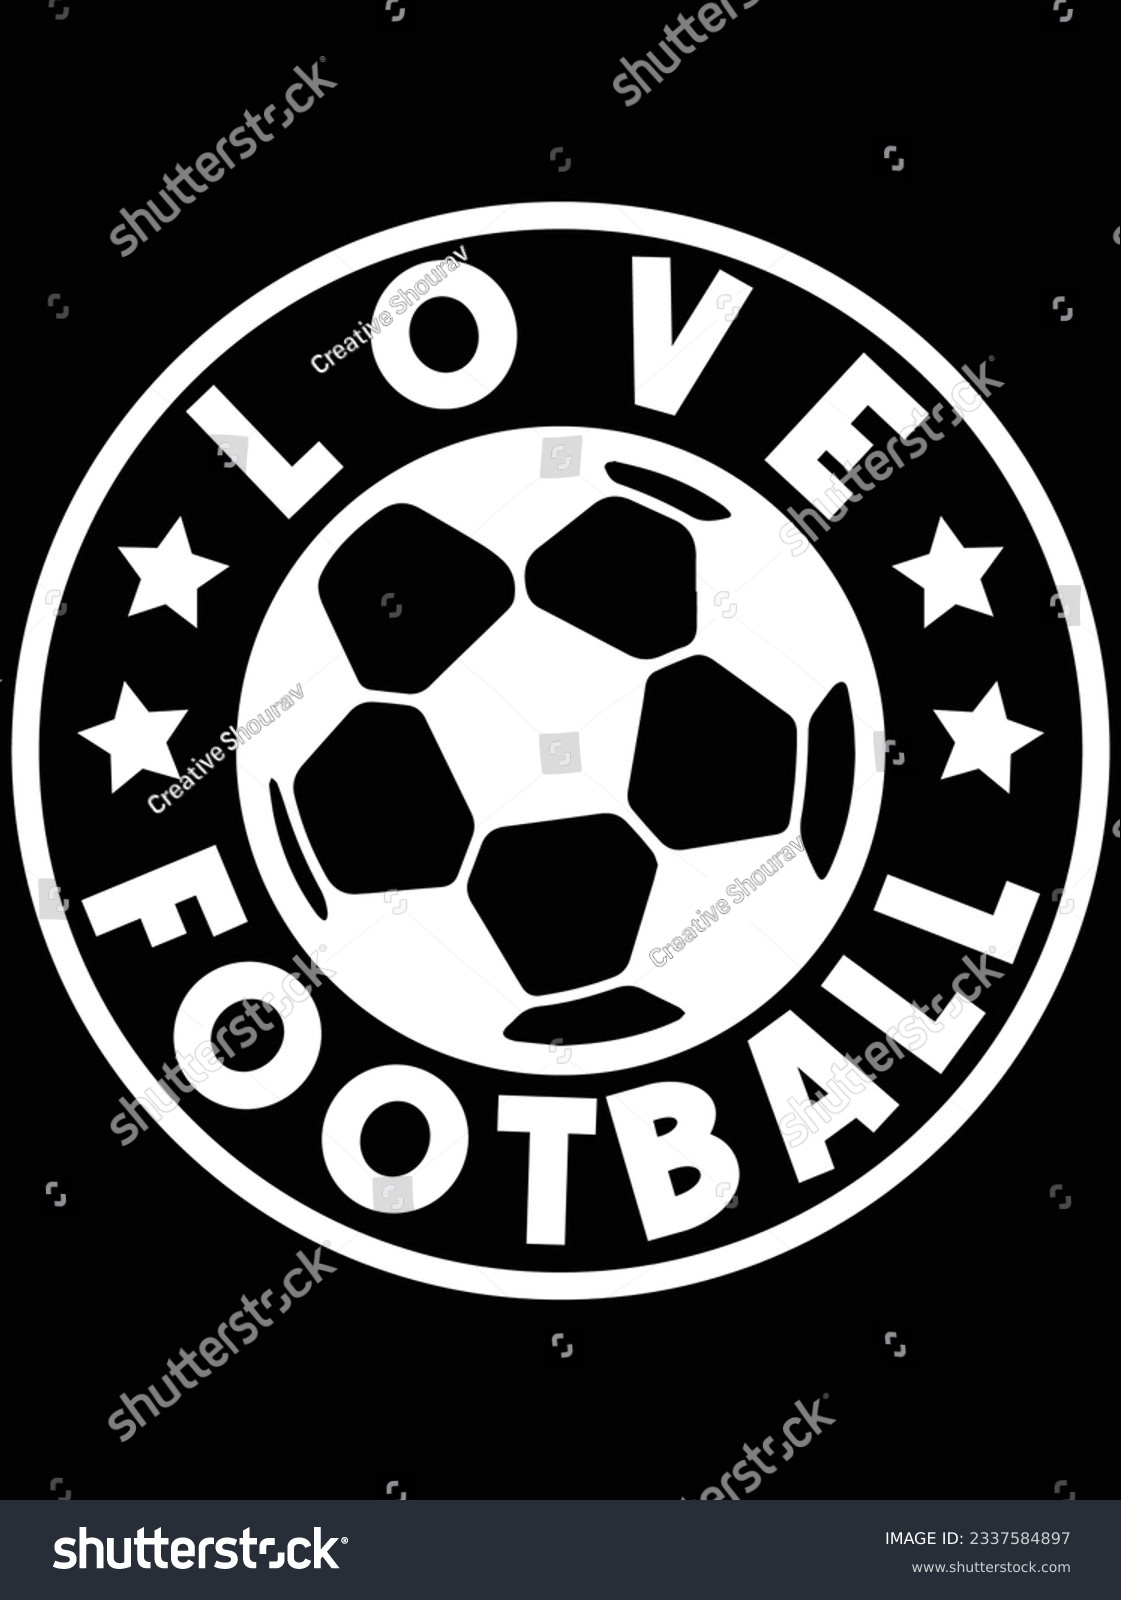 SVG of Love football vector art design, eps file. design file for t-shirt. SVG, EPS cuttable design file svg